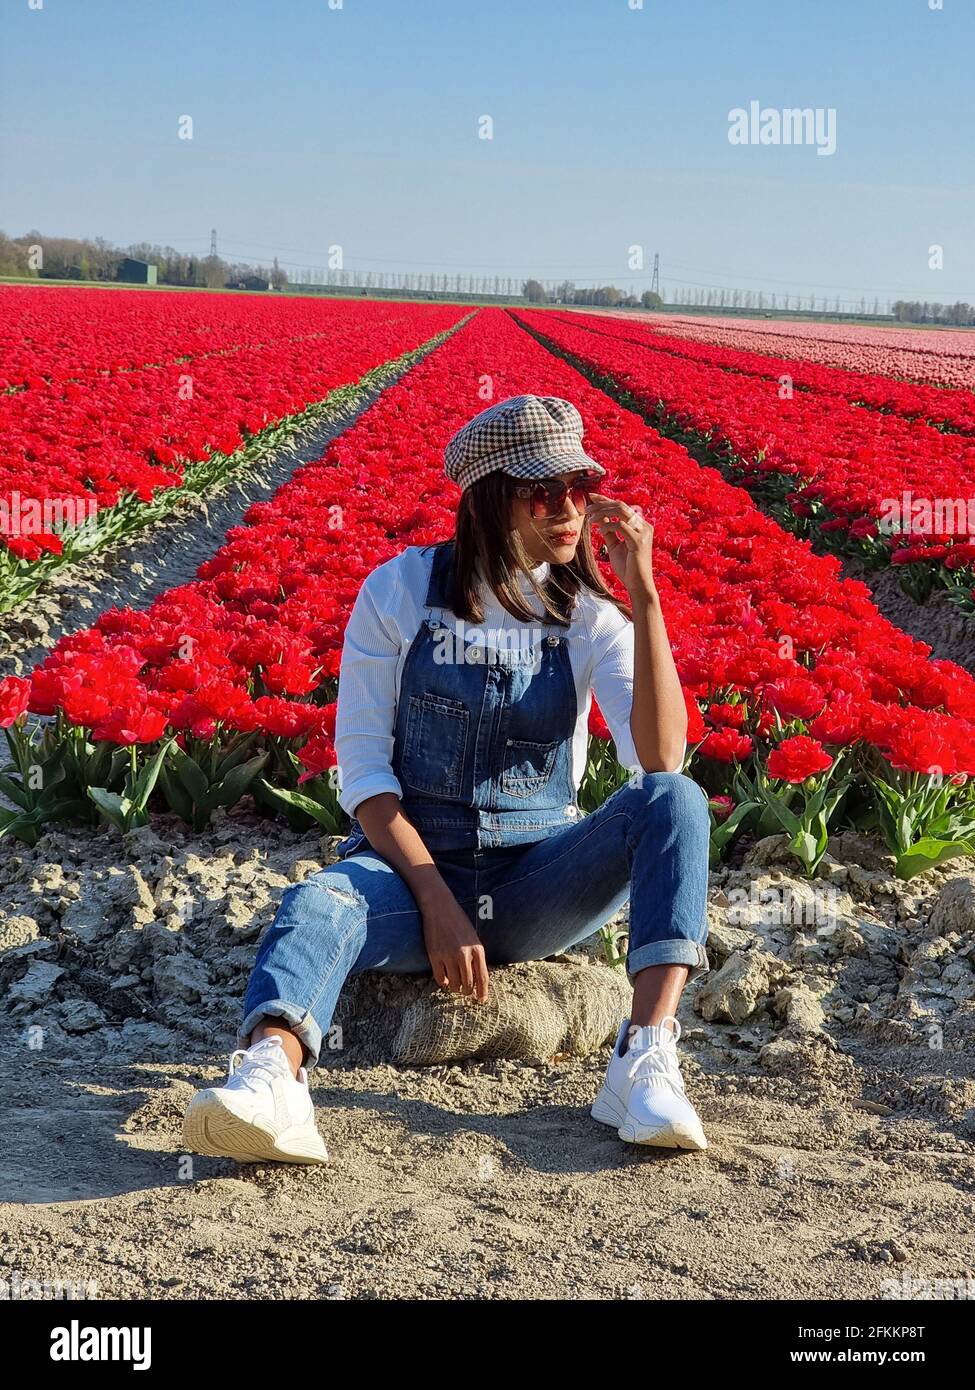 Champ de tulipes aux pays-Bas, champs de tulipes colorés à Flevoland  Noordoosstpolder Hollande, vues de printemps néerlandais aux pays-Bas,  femme de milieu d'âge dans champ de fleurs Photo Stock - Alamy